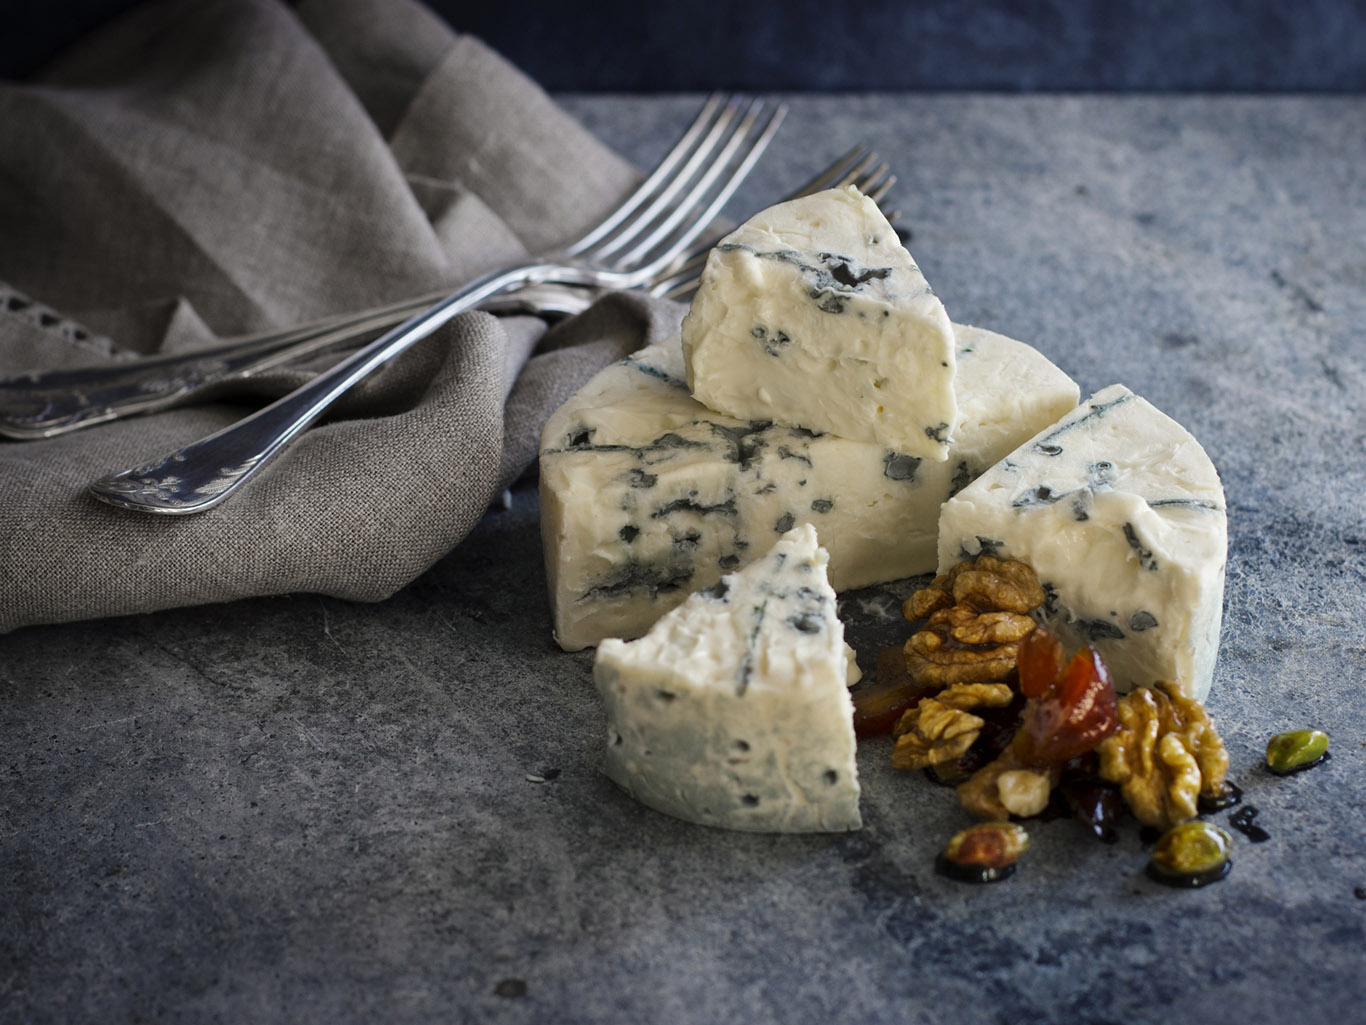 Сыр: польза и вред для организма, калорийность и состав